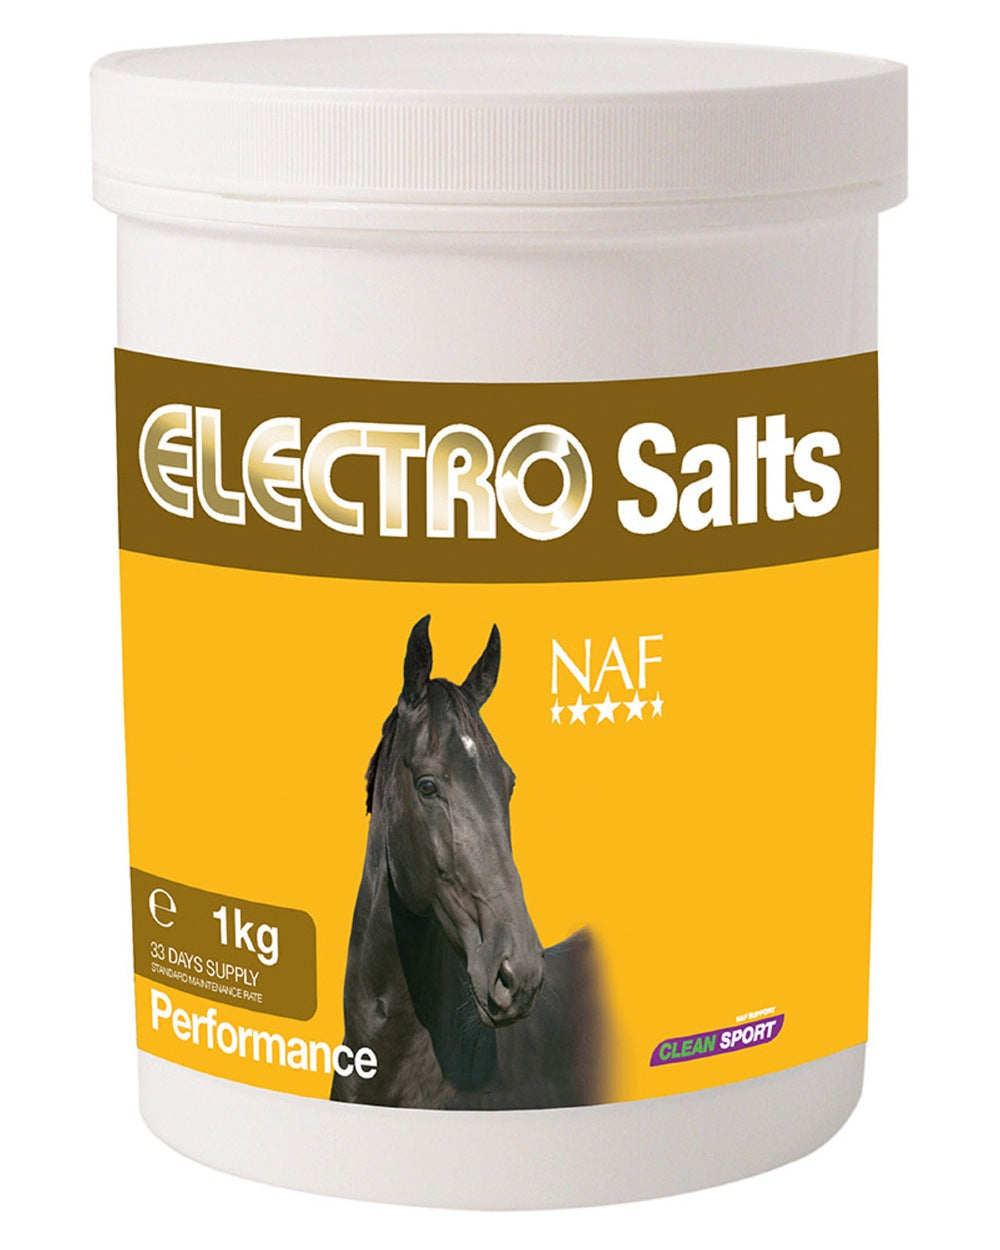 NAF Electro Salts 1kg on white background